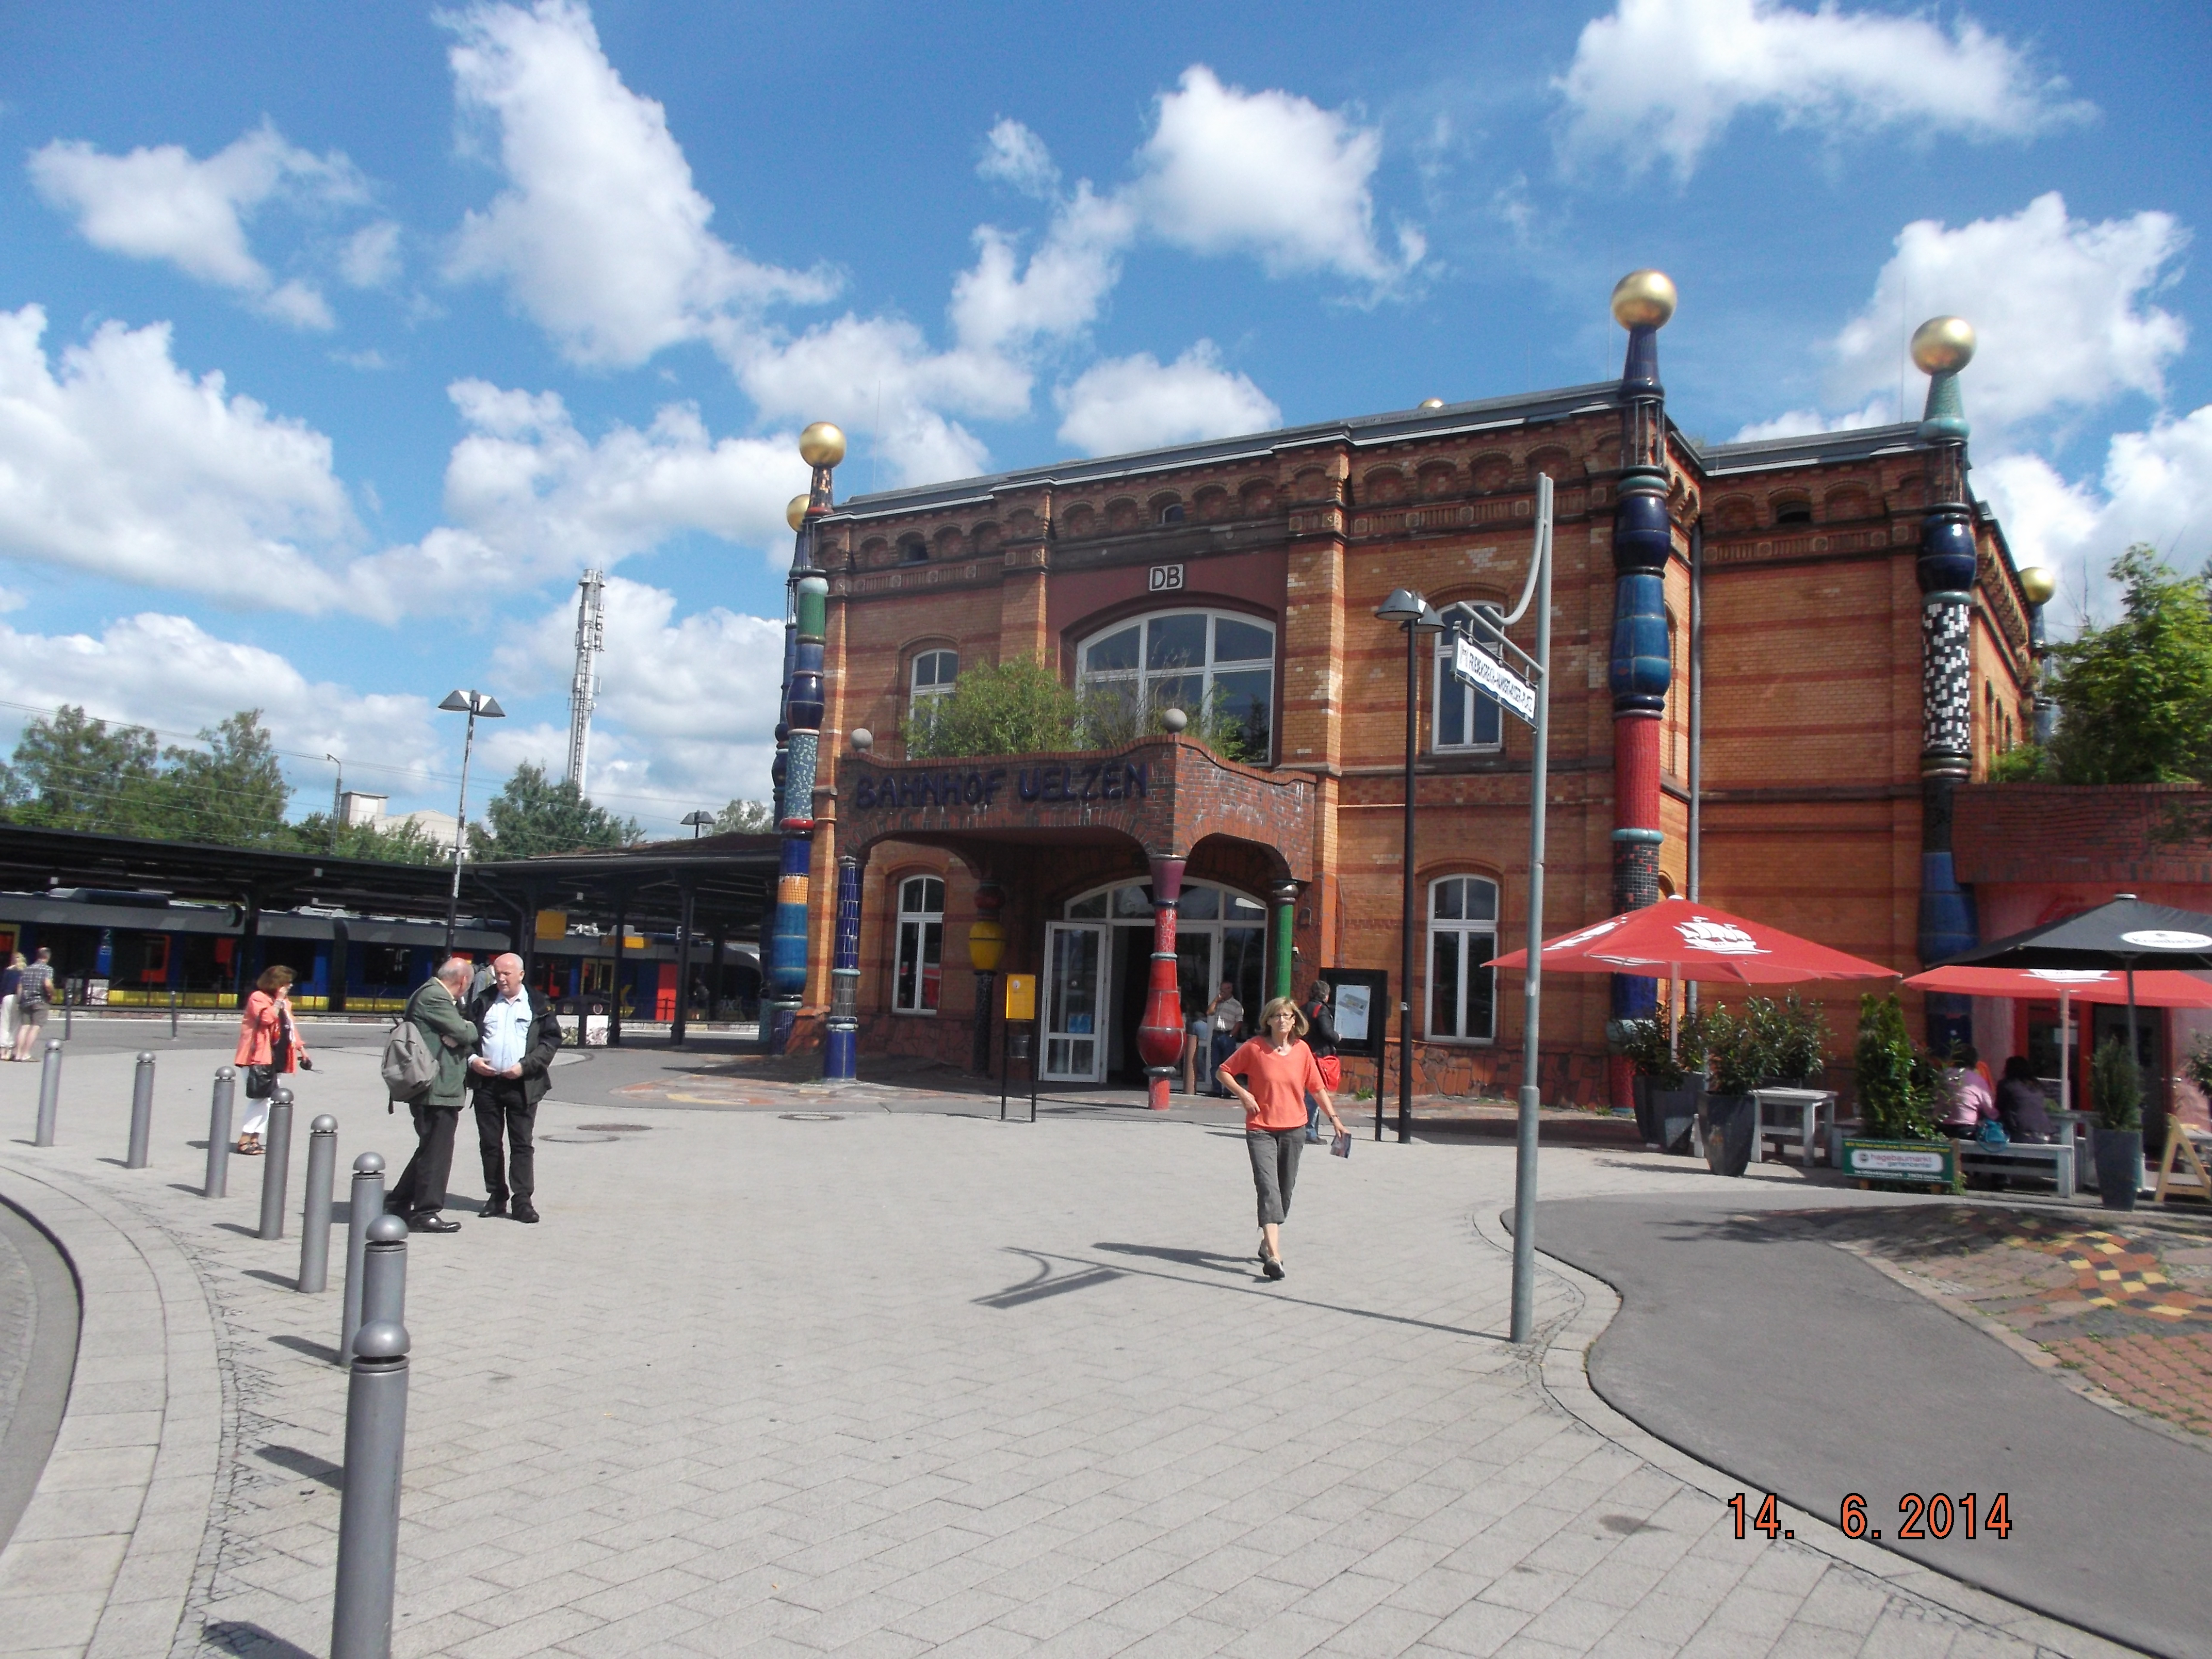 Farbfoto: Der Hundertwasserbahnhof in Uelzen am Sonntag, dem 15. Juni im Jahre 2014. Fotograf: Ralph Ivert.